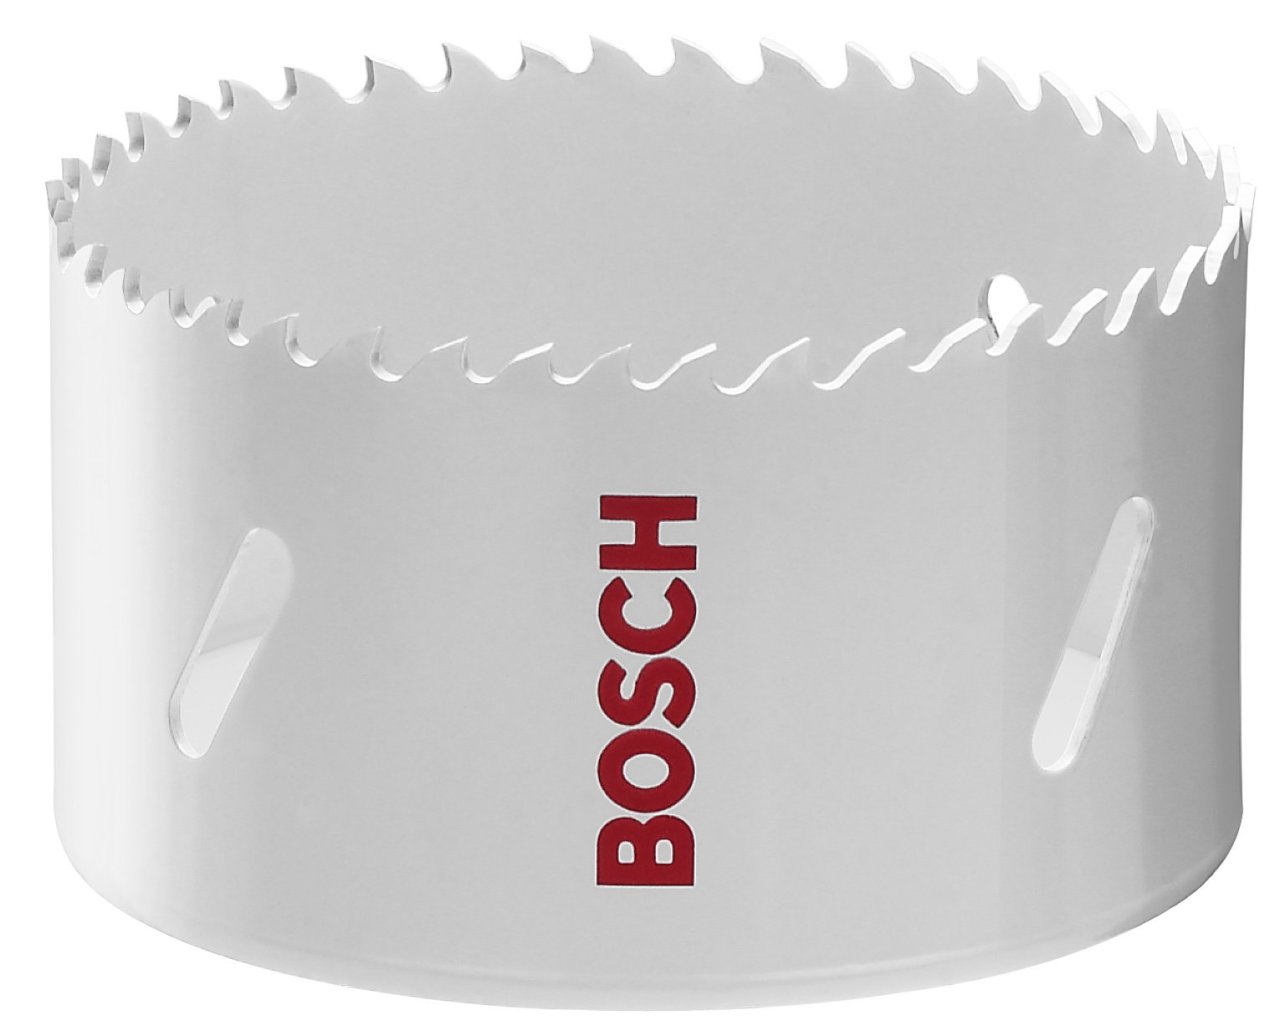 Bosch HSS Bi-Metal Panç 121 mm